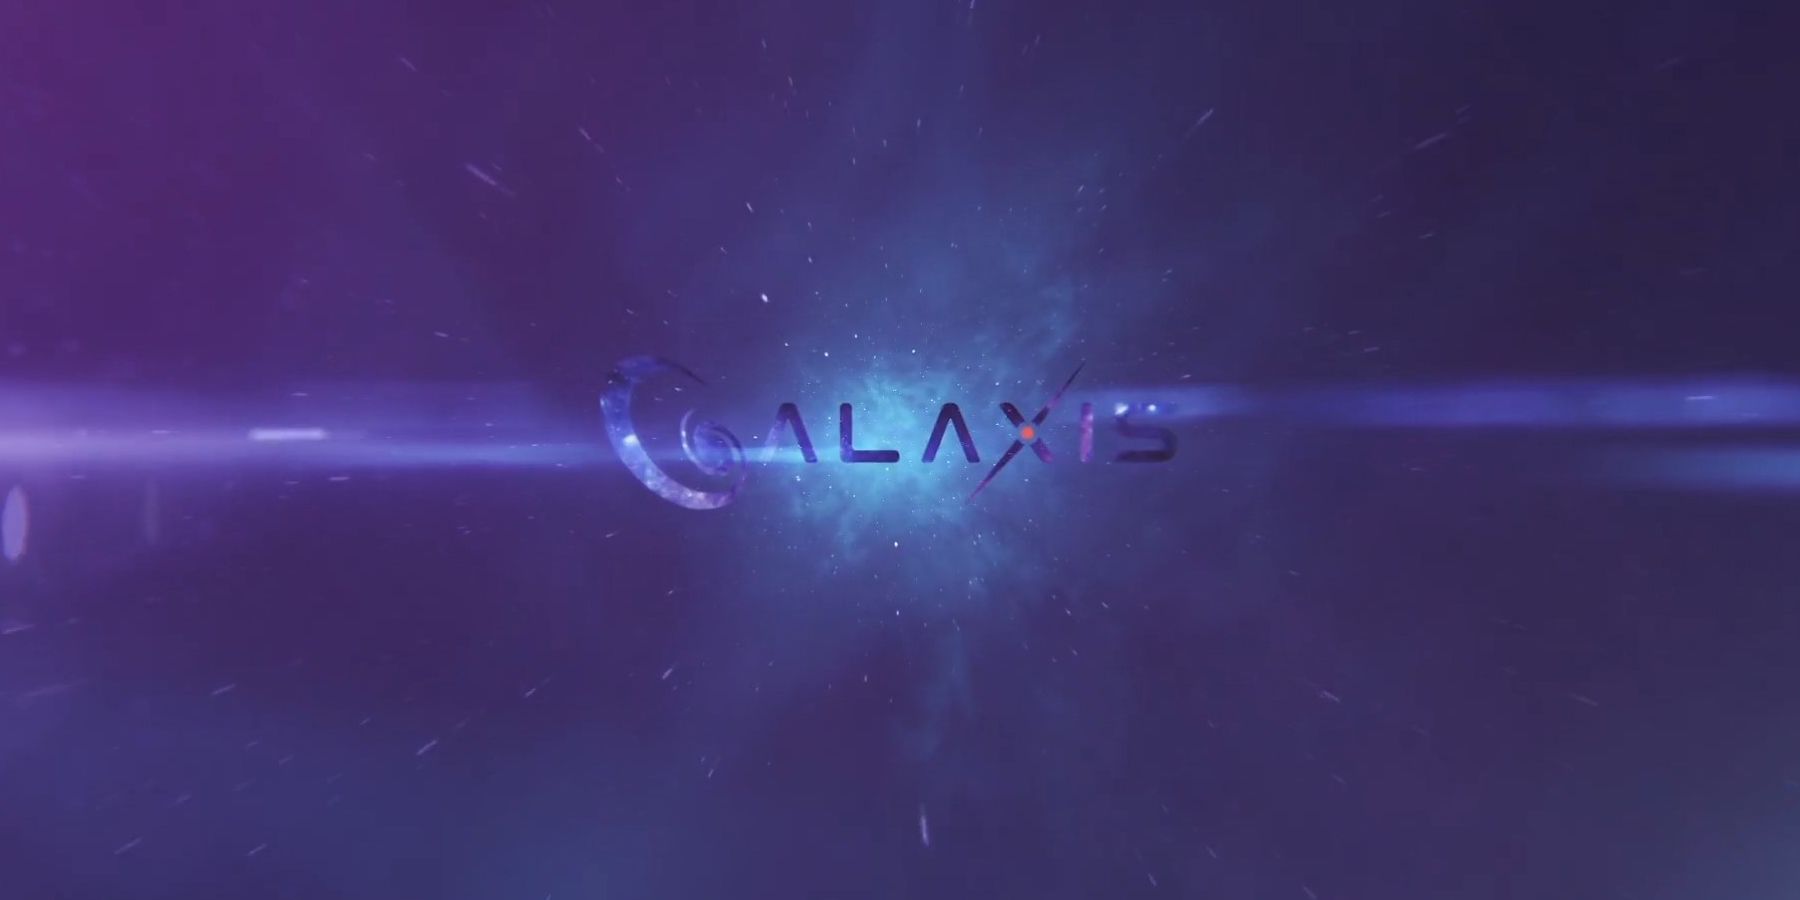 Entretien des galaxis: le PDG Max Gallardo détaille les systèmes de points de la plate-forme de streaming, la modération communautaire, et plus encore